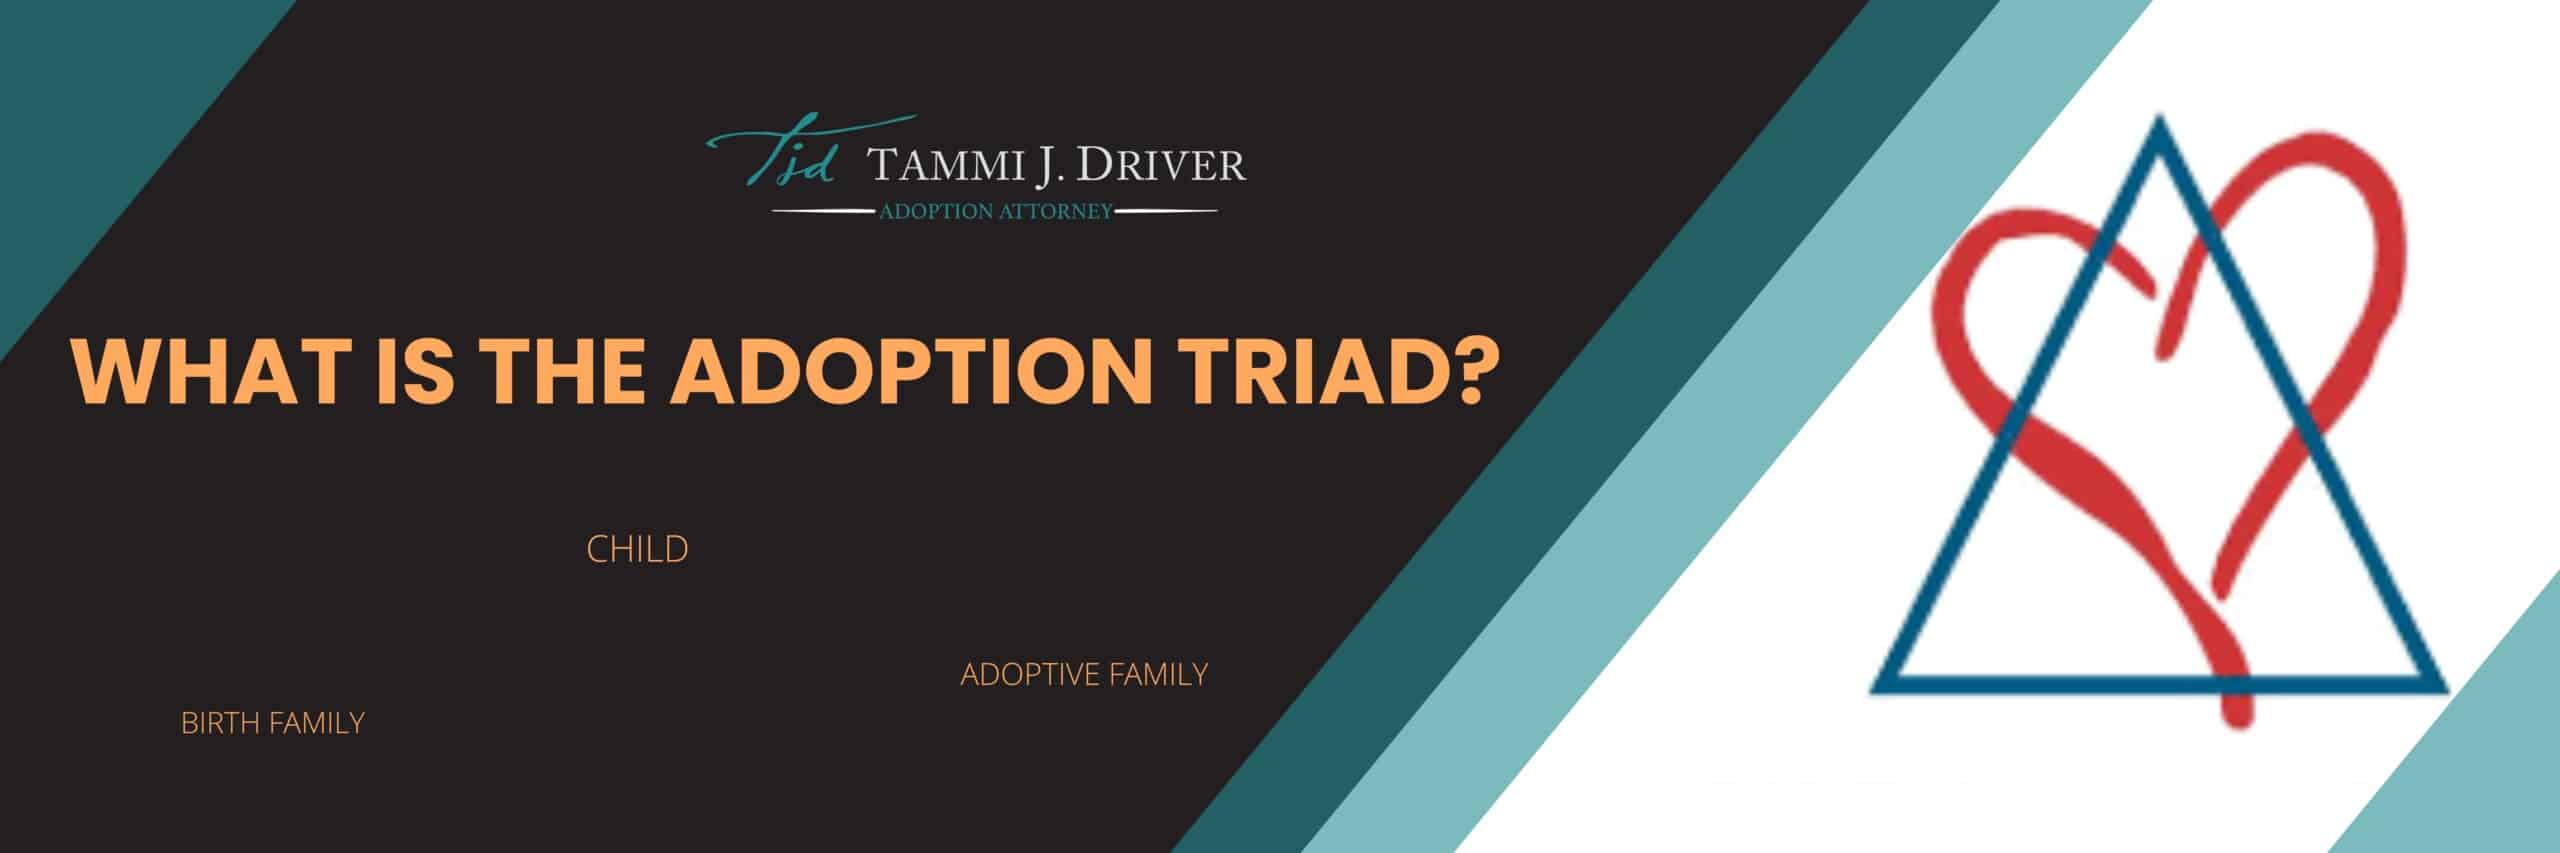 Adoption Triad - baby adoption FL